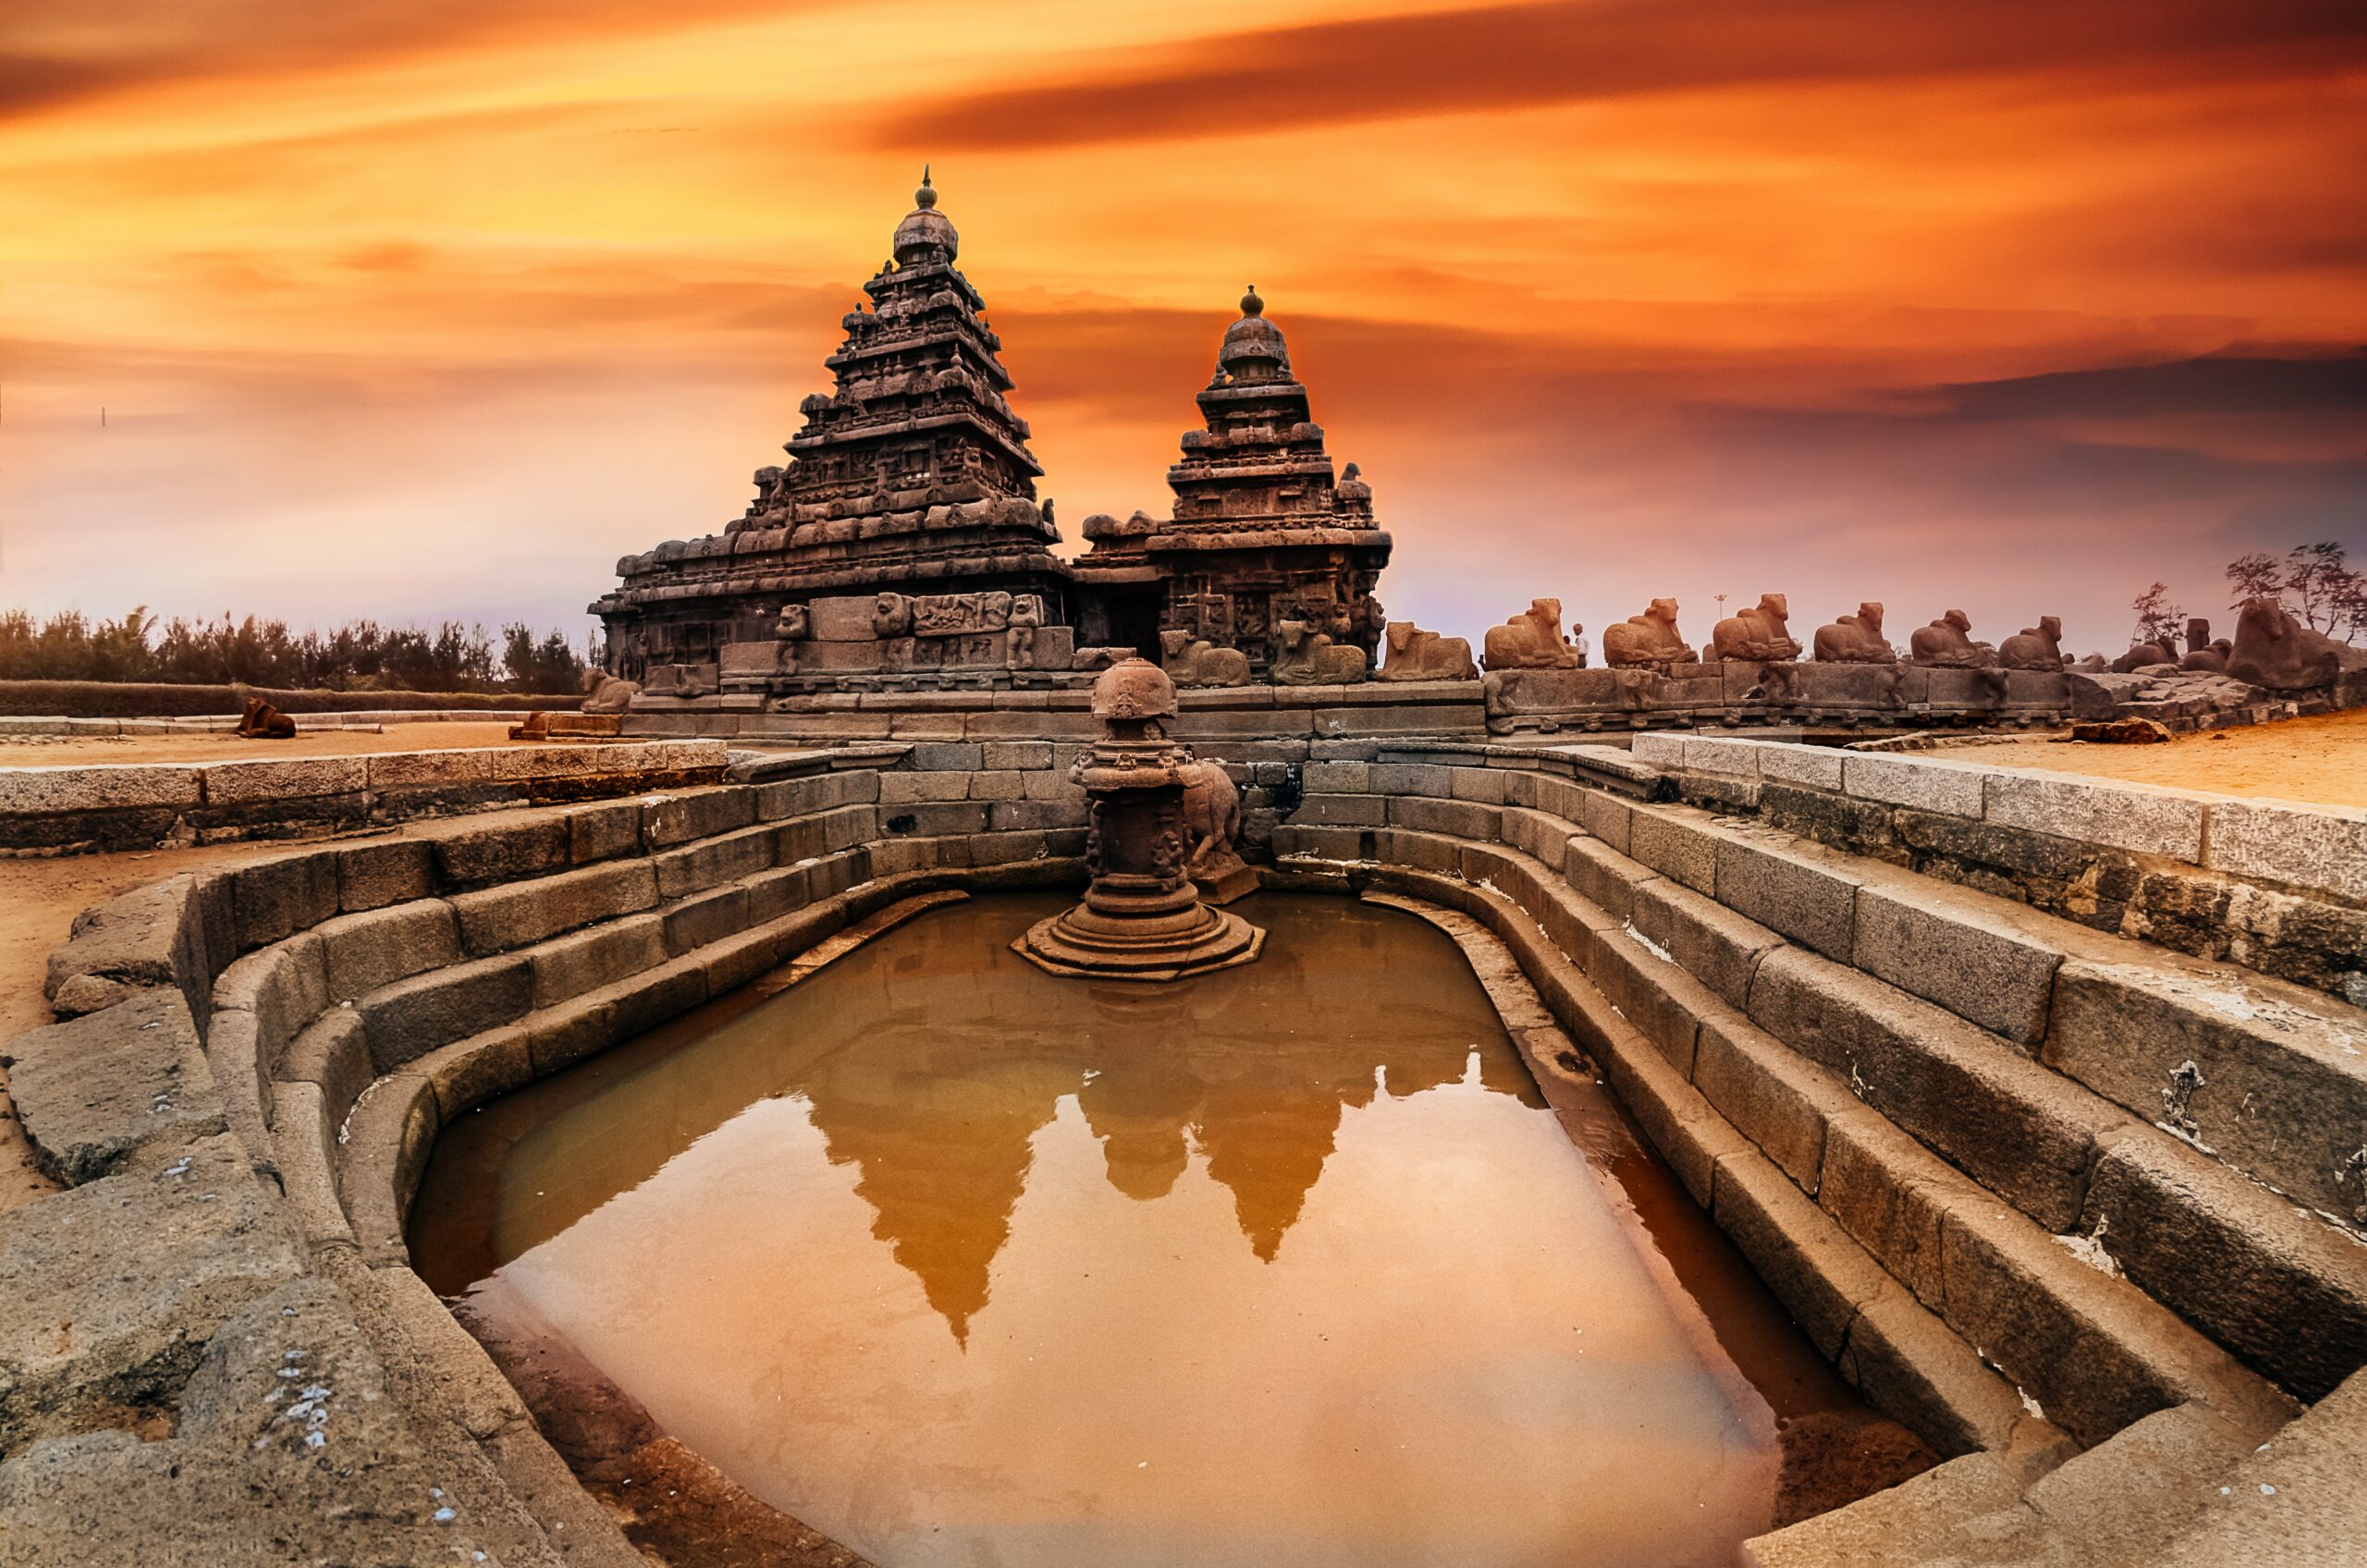 महाबलीपुरम भारत के तमिलनाडु राज्य में बंगाल की खाड़ी के साथ कोरोमंडल तट पर स्थित महाबलीपुरम देश का एक ऐतिहासिक और लोकप्रिय पर्यटन स्थल है। महाबलीपुरम को अपने मंदिरों और रॉक-कट गुफाओं के लिए जाना जाता है। यही कारण है कि इस जगह पर हर साल लाखों सैलानी आते हैं। महाबलीपुरम किसी ज़माने में एक प्रमुख बंदरगाह हुआ करता था पर वर्तमान में एक यूनेस्को की विश्व धरोहर है। गुफा मंदिरों, स्थापत्य के चमत्कारों और सूर्यास्त को देखने के लिए लोग इस जगह पर आते हैं।